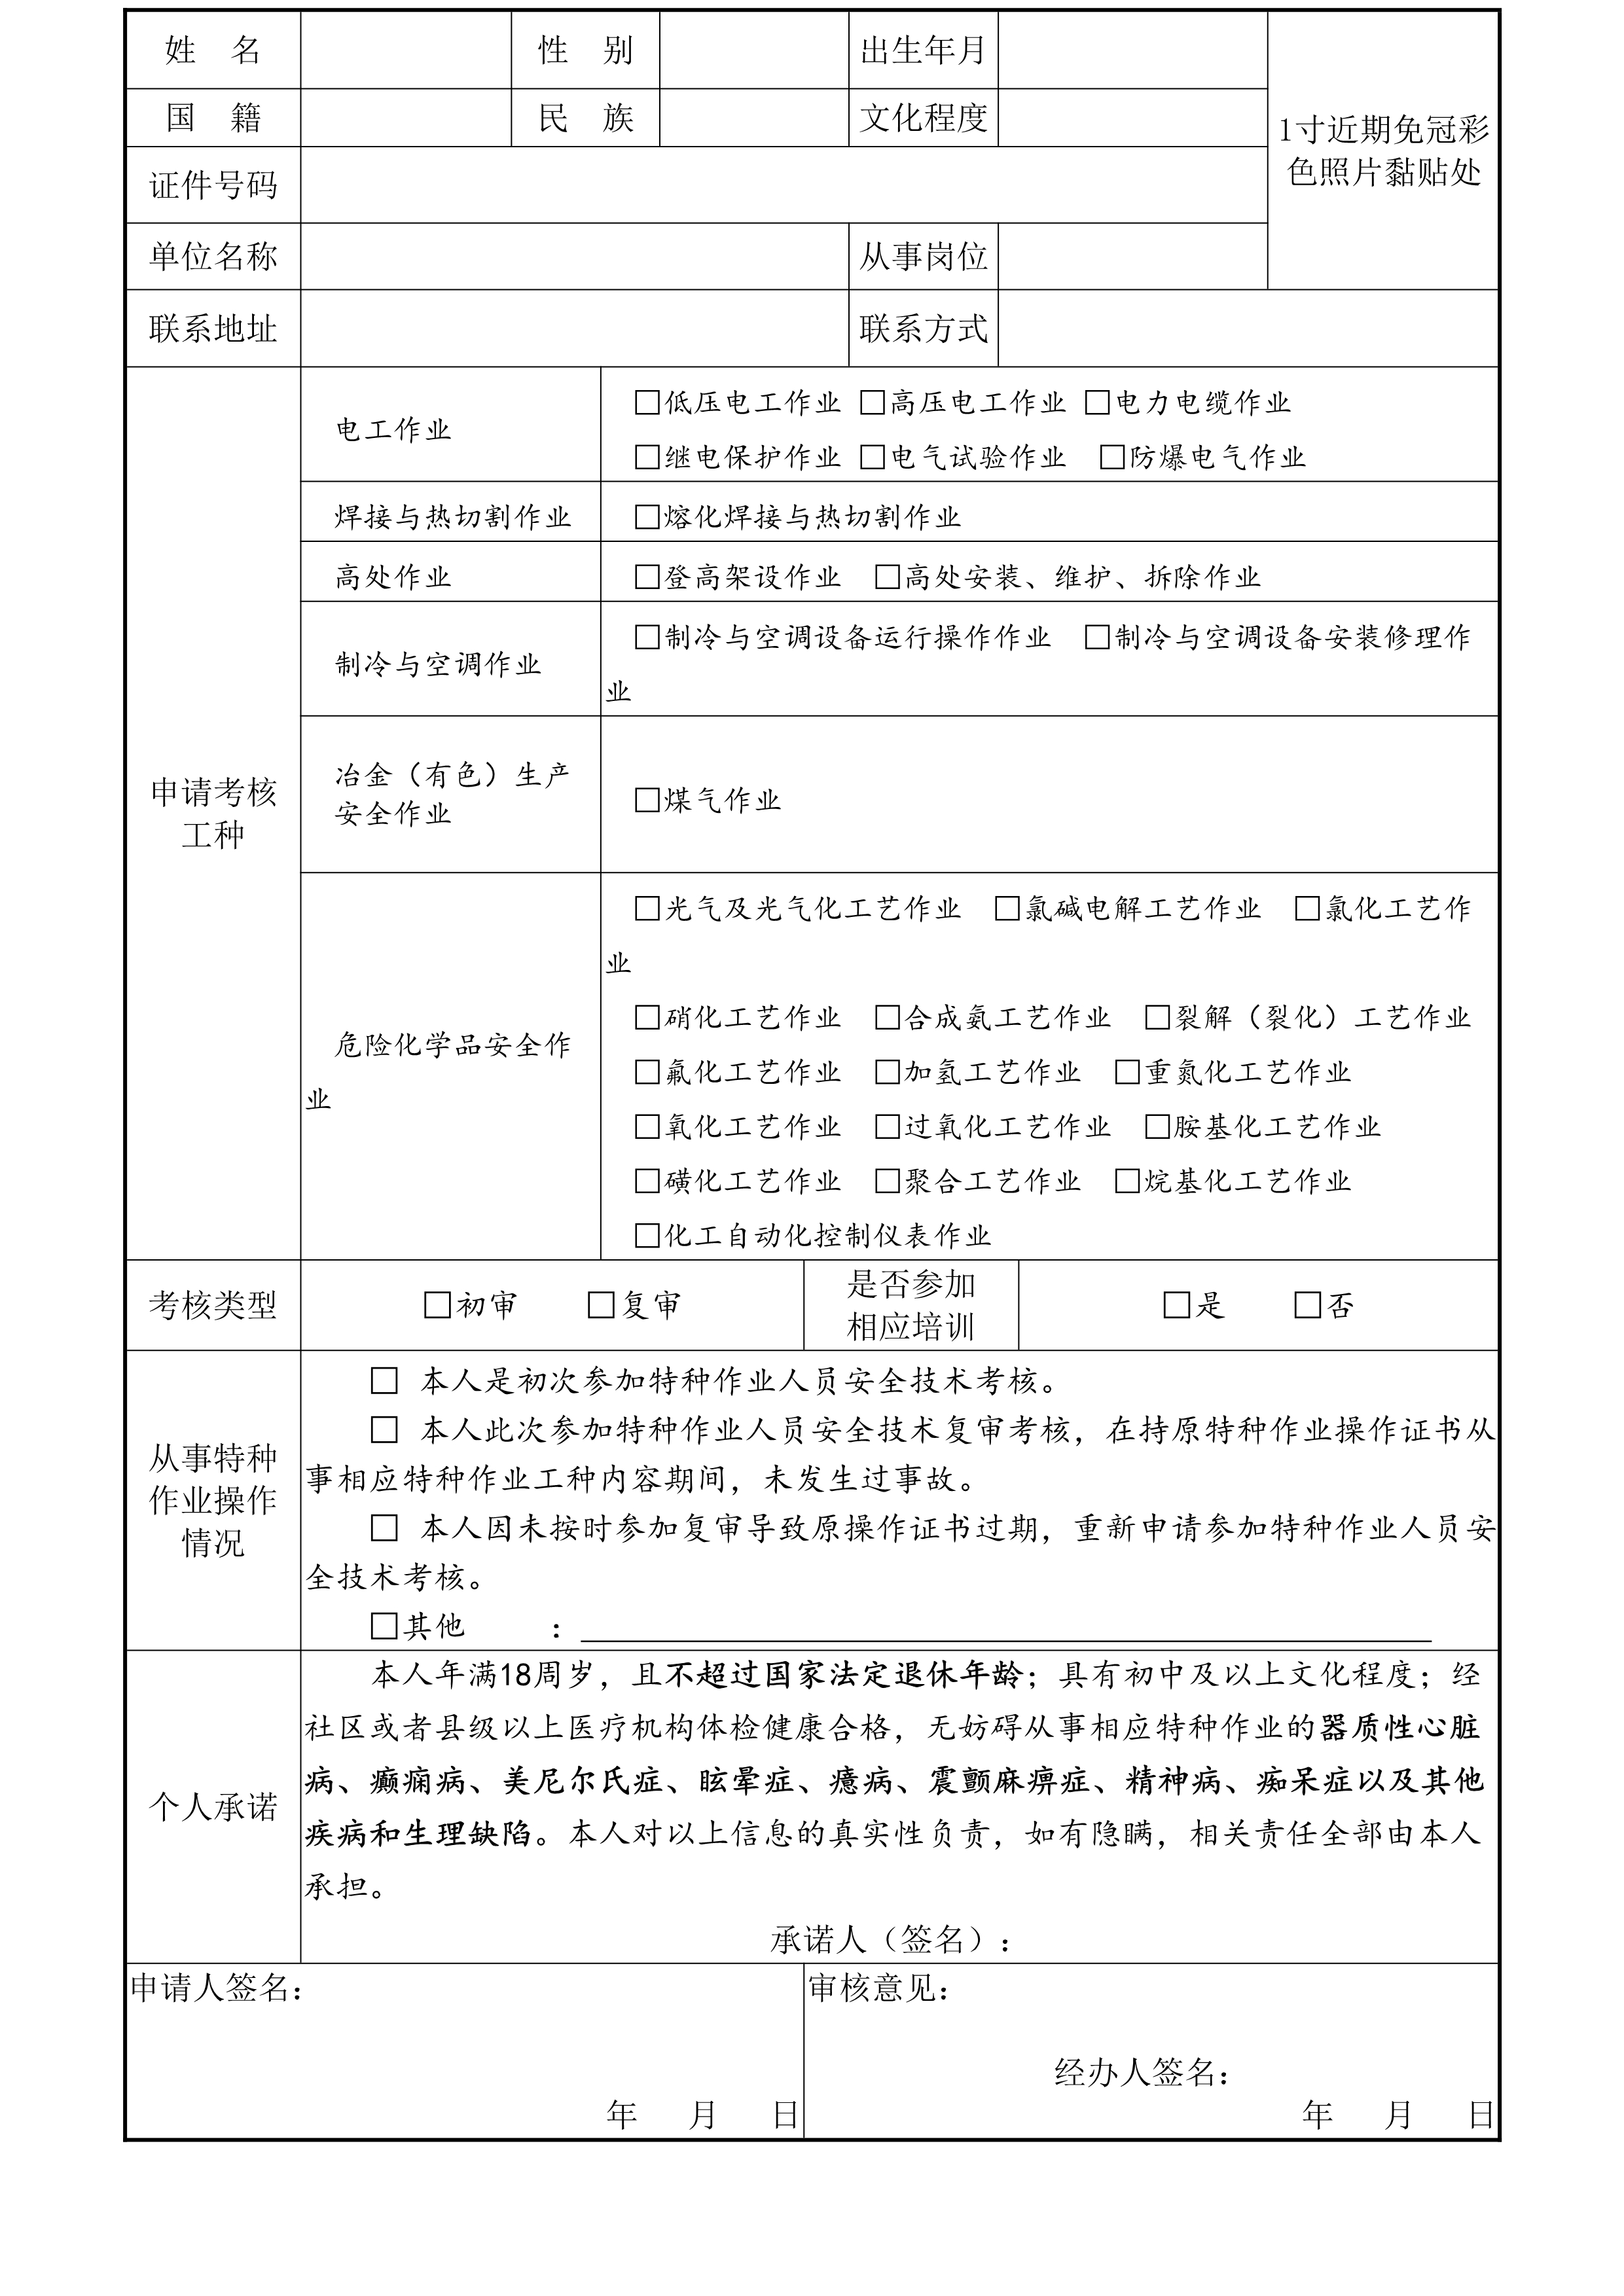 《制冷与空调作业》操作证培训招生简章（特种作业证）（杨浦）_3.jpg